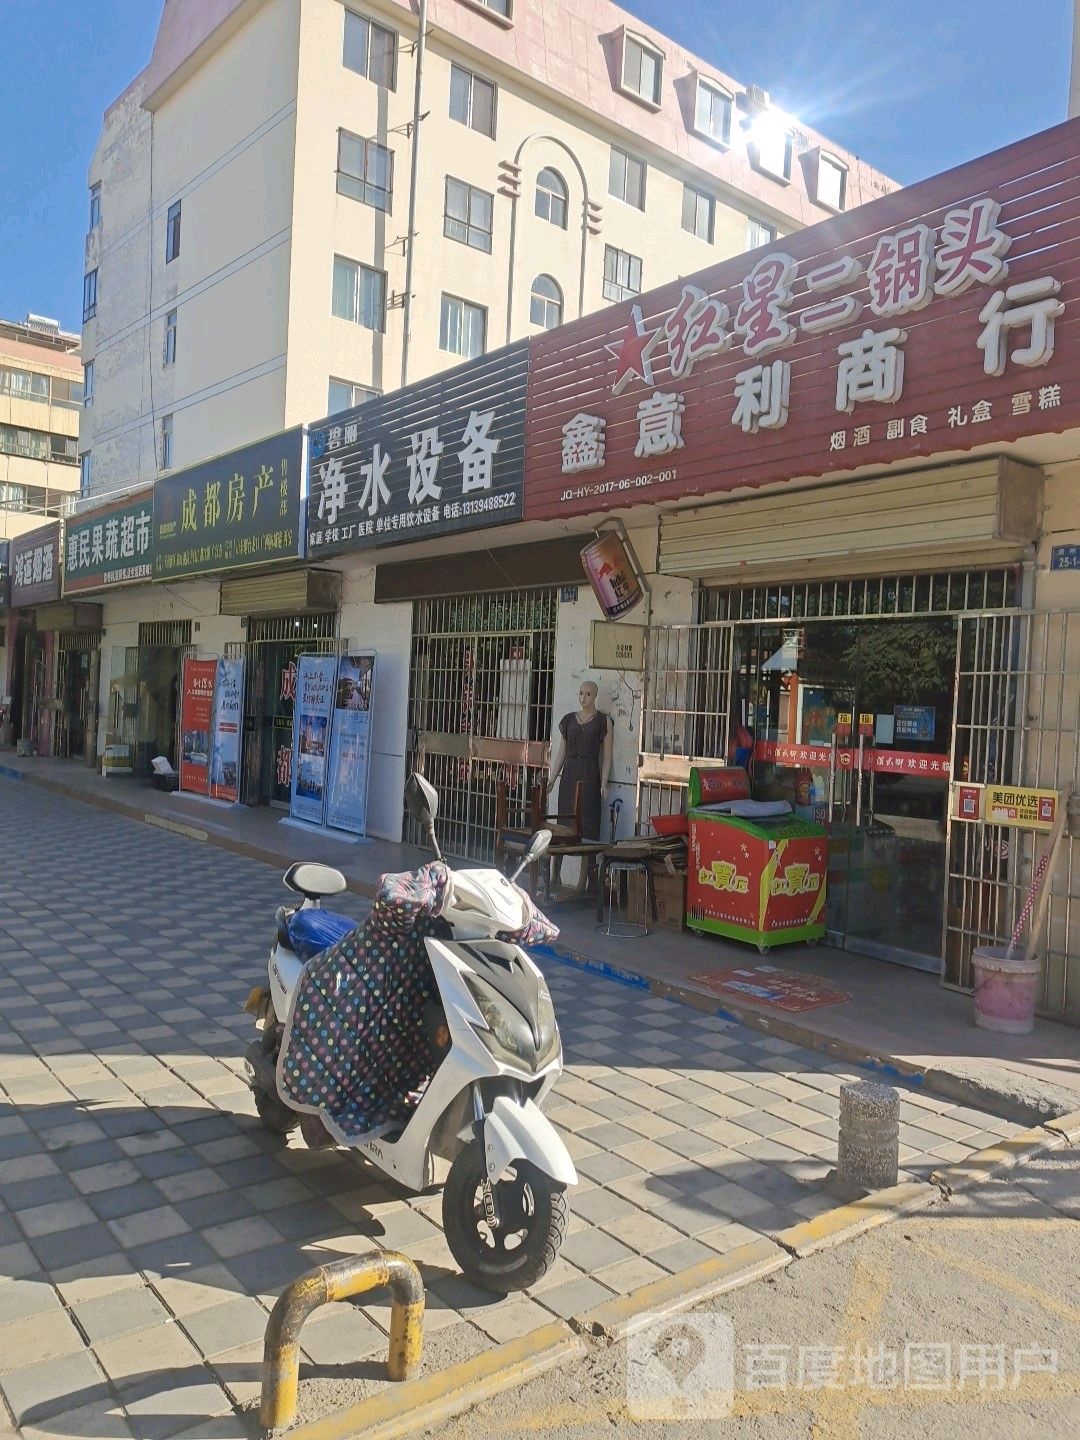 惠民果蔬超市(肃州路店)